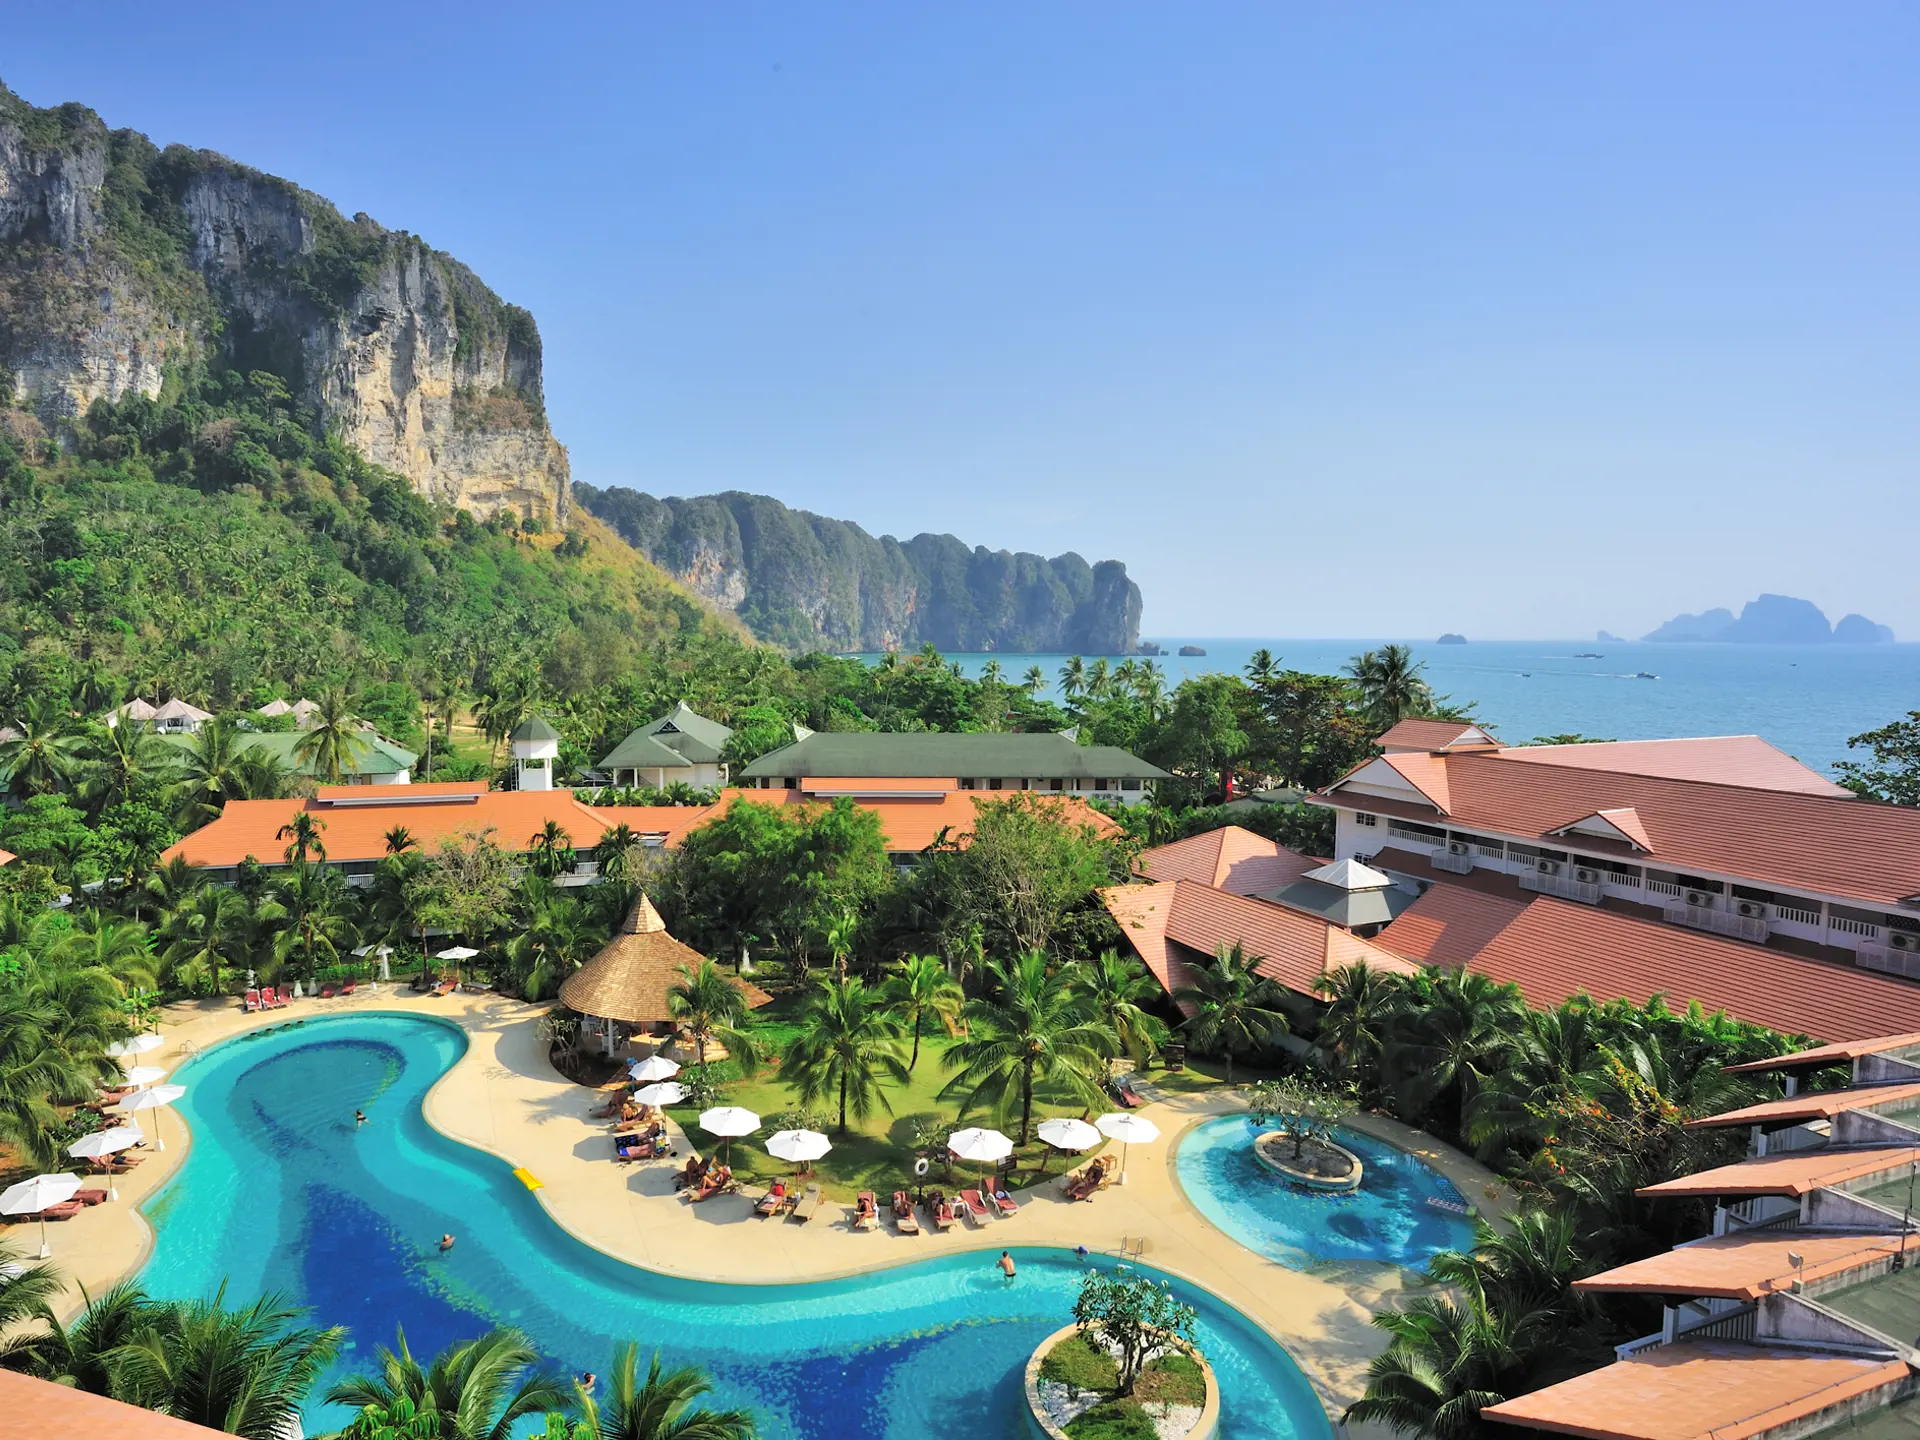 AO NANG VILLA - Er et dejligt 4-stjernet resort, der efter vores mening har den bedste beliggenhed i Ao Nang. Ned til stranden og tæt på strandpromenadens butikker og restauranter, Check Point Travel